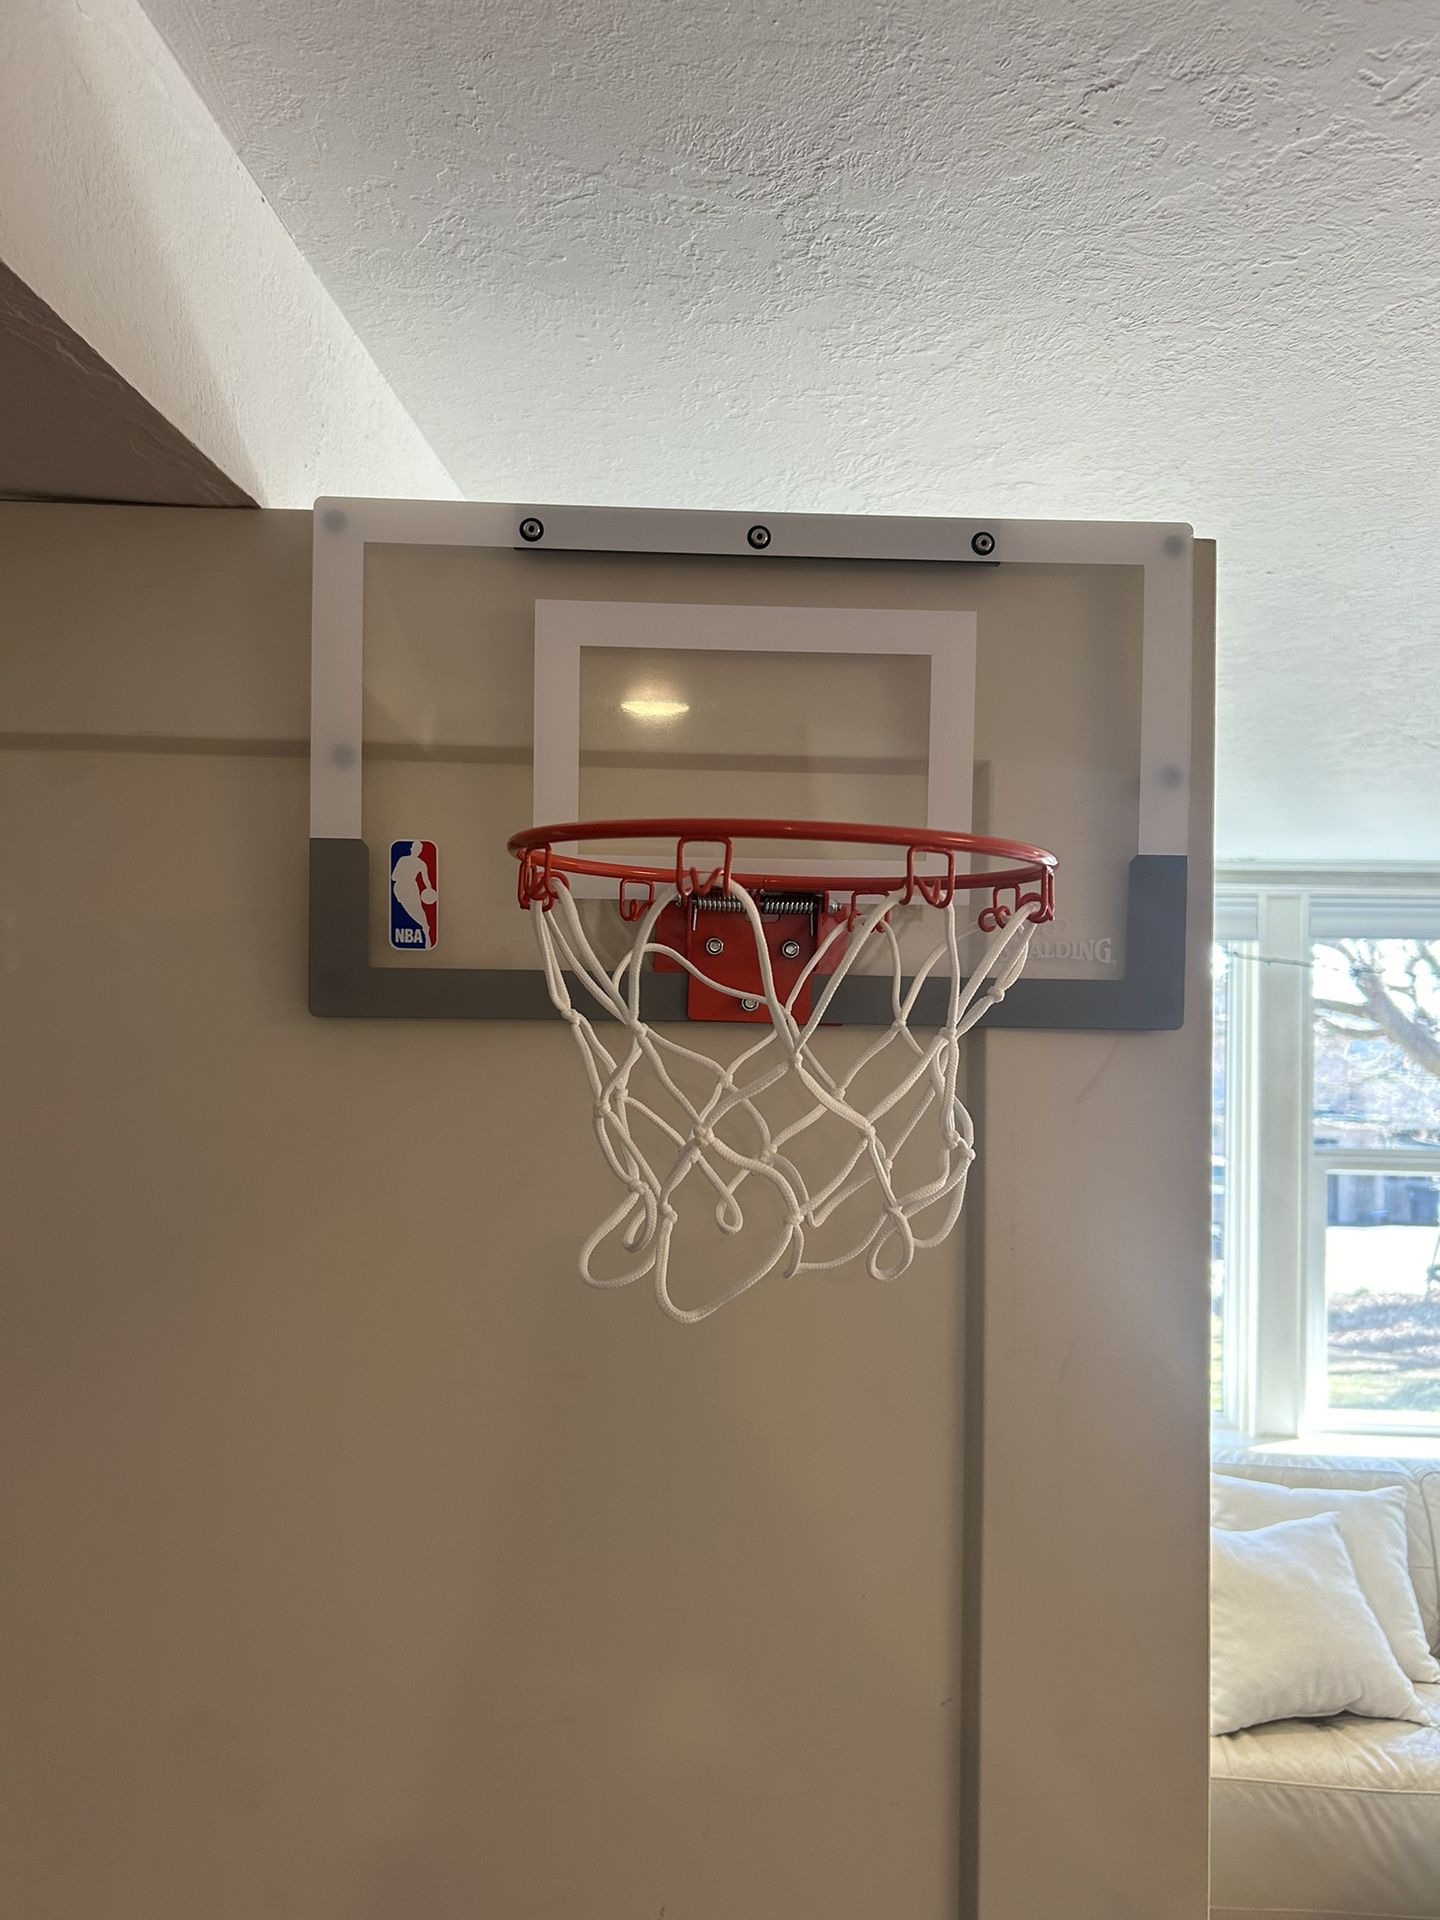 Spalding Over The Door Basketball Hoop